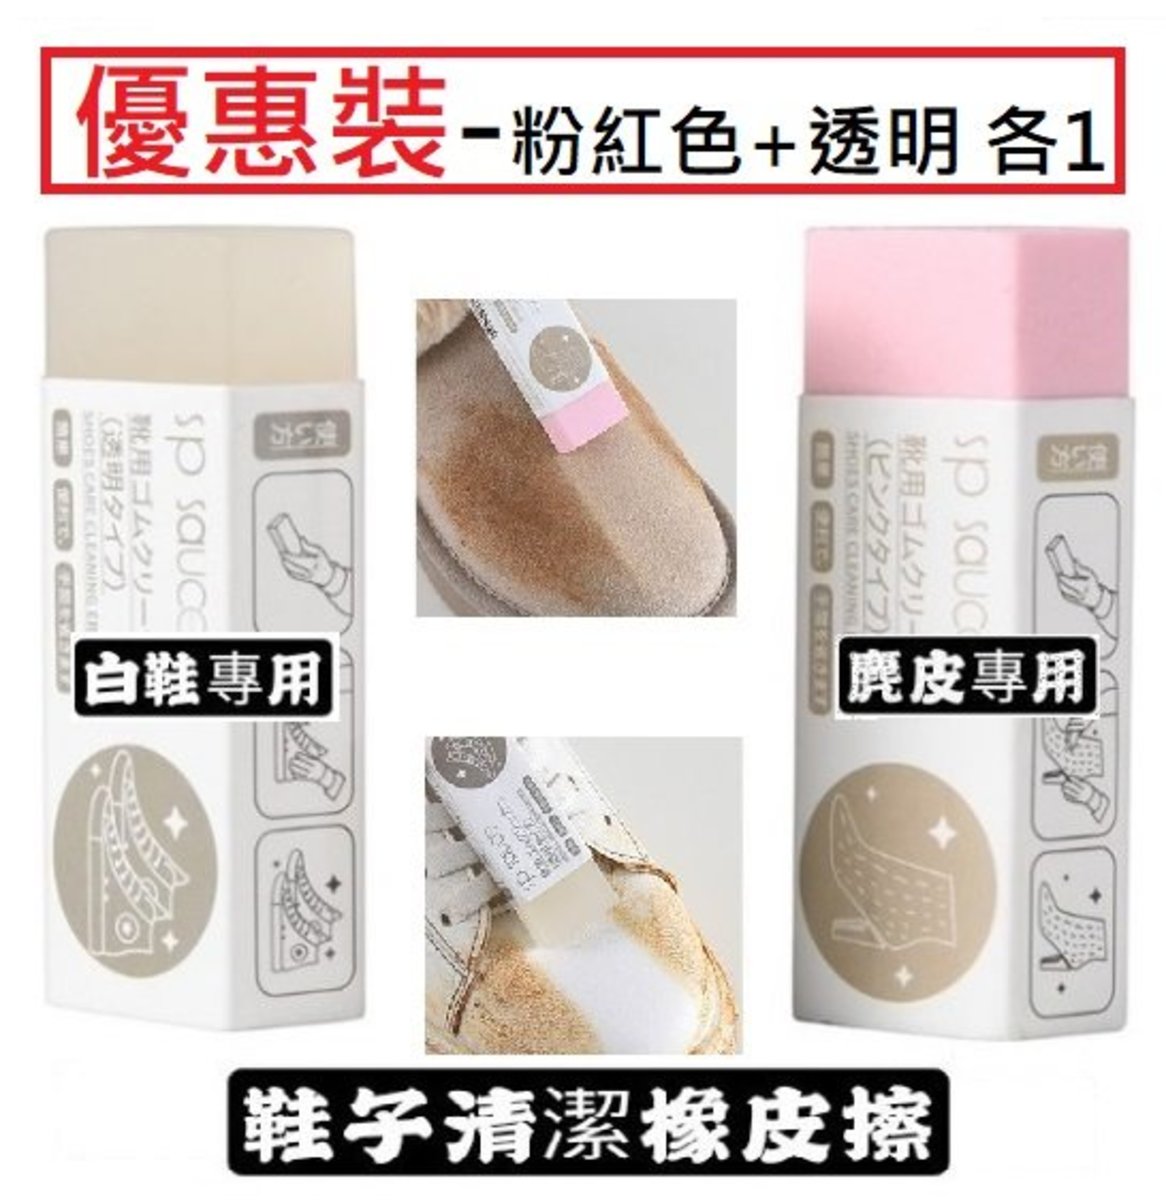 Sp Sauce 2 Pcs Set Transparent Pink Japan Shoes Care Cleaning Eraser Hktvmall The Largest Hk Shopping Platform